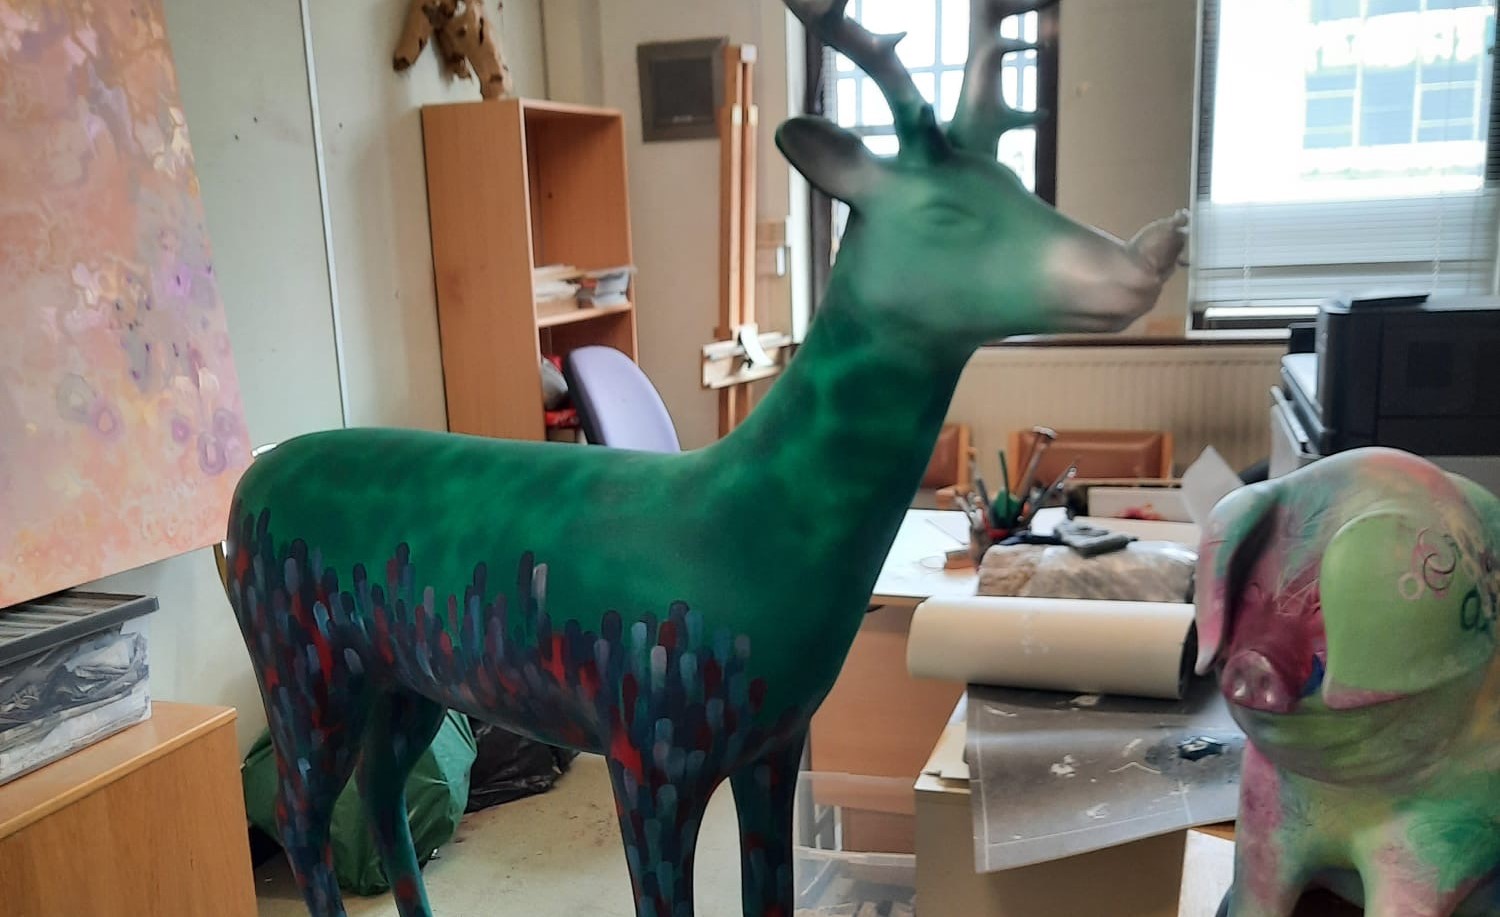 Painted reindeer